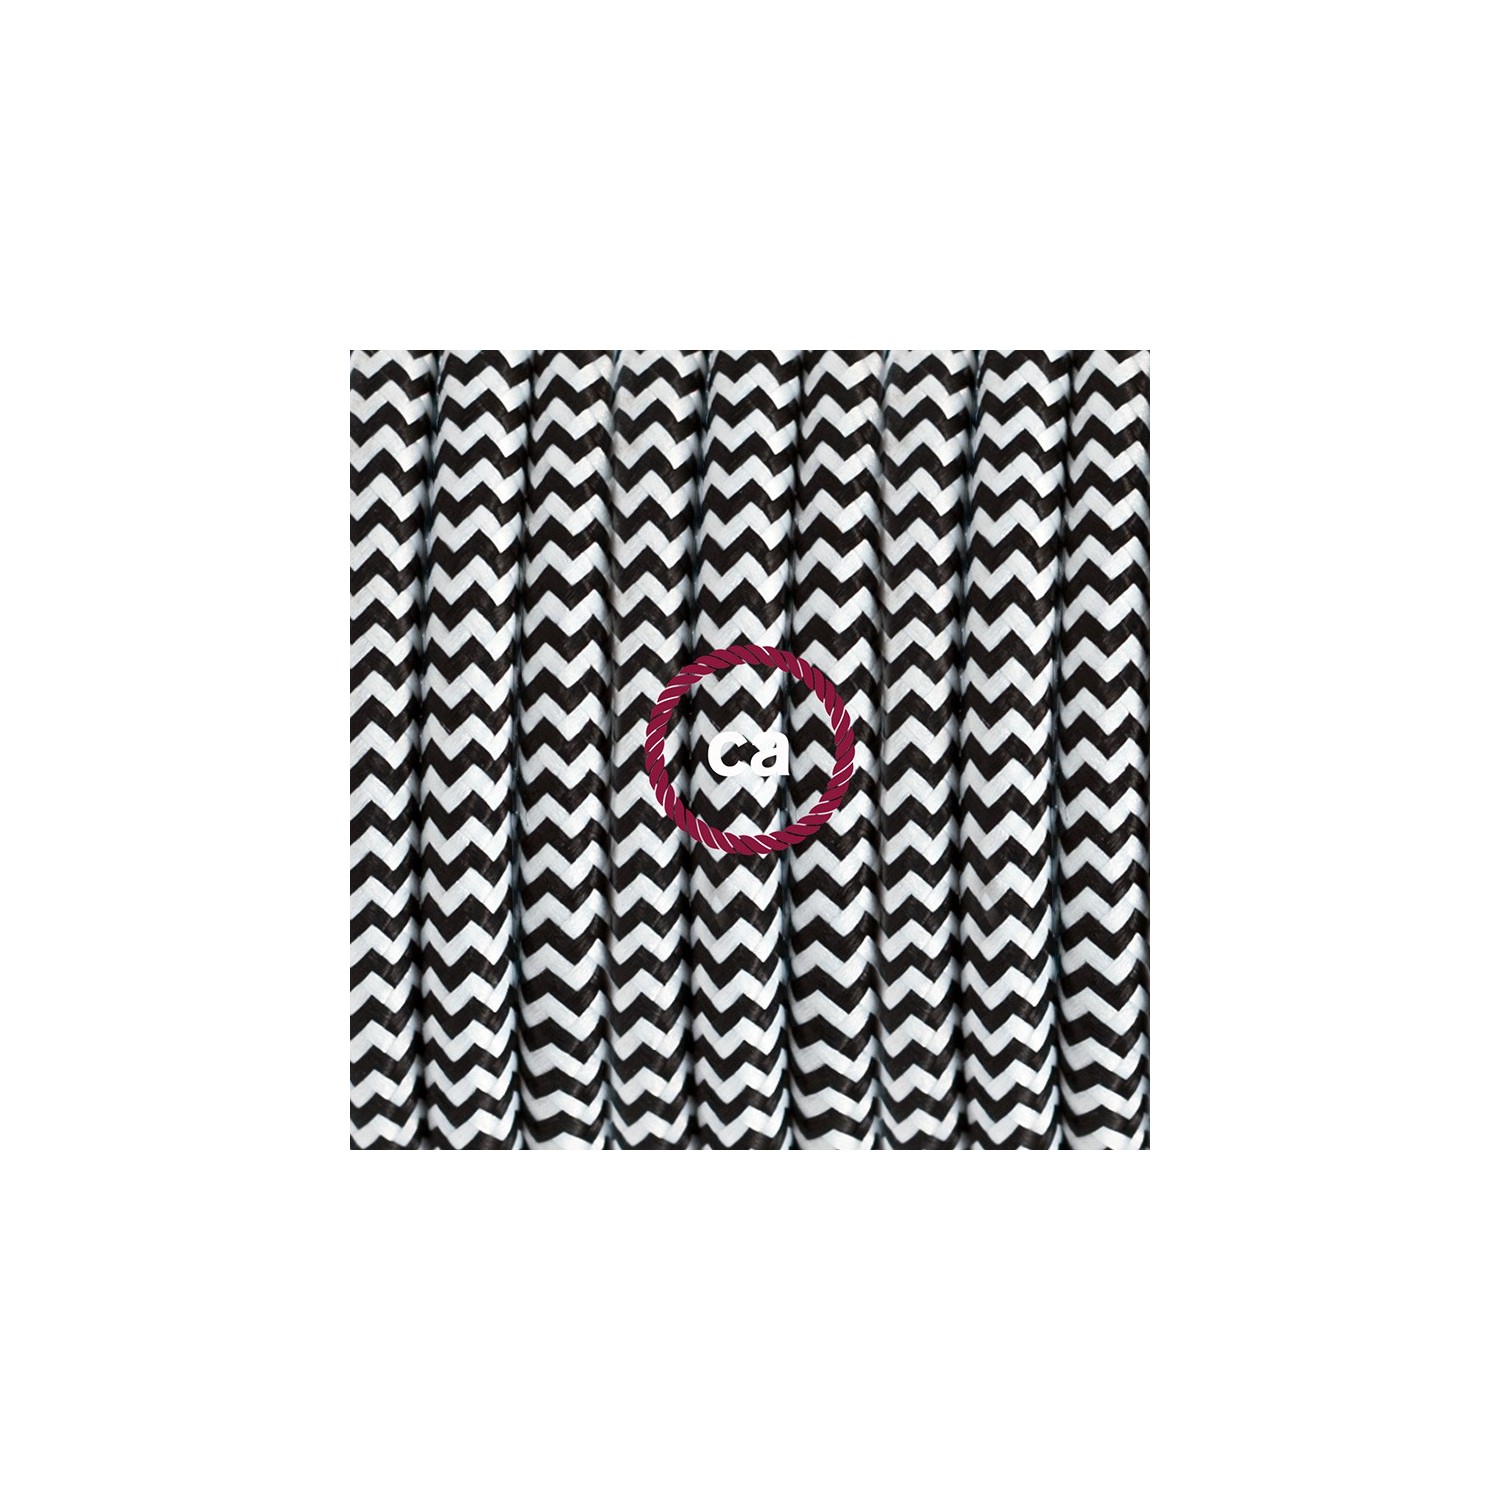 Zuleitung für Tischleuchten RZ04 Zick-Zack Weiß Schwarz Seideneffekt 1,80 m. Wählen Sie aus drei Farben bei Schalter und Stecke.